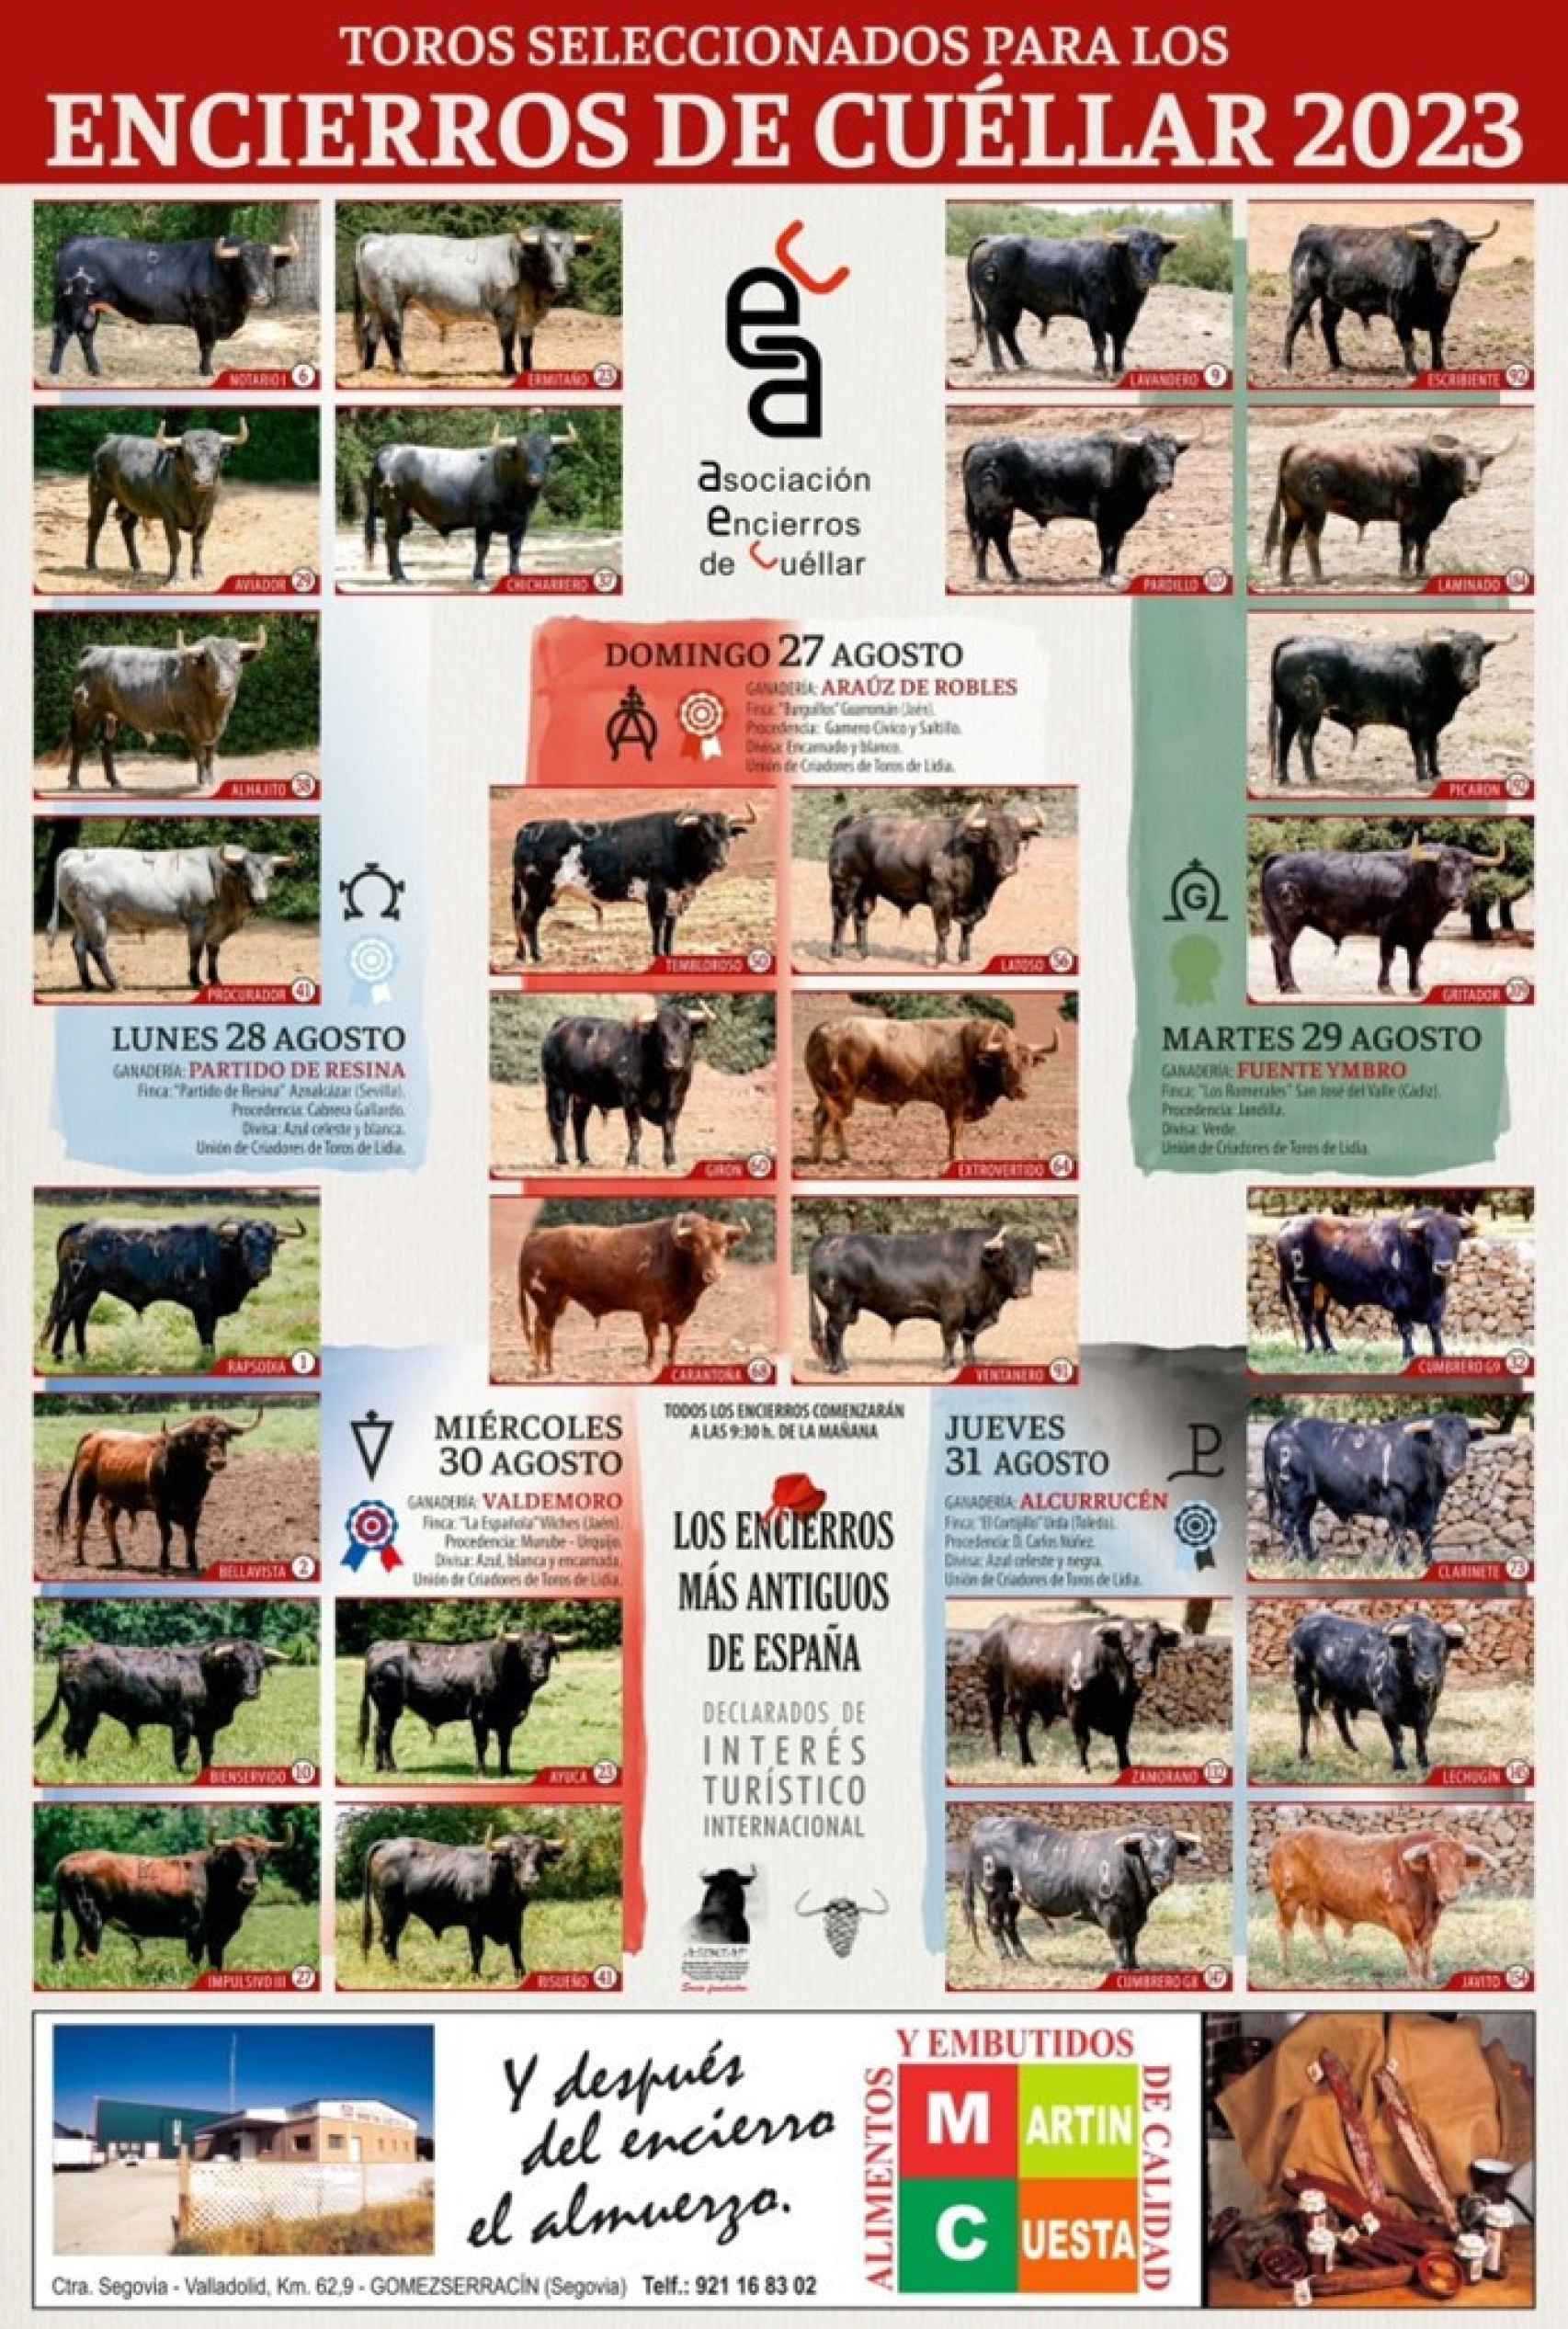 Cartel de los toros seleccionados para los encierros de Cuéllar 2023